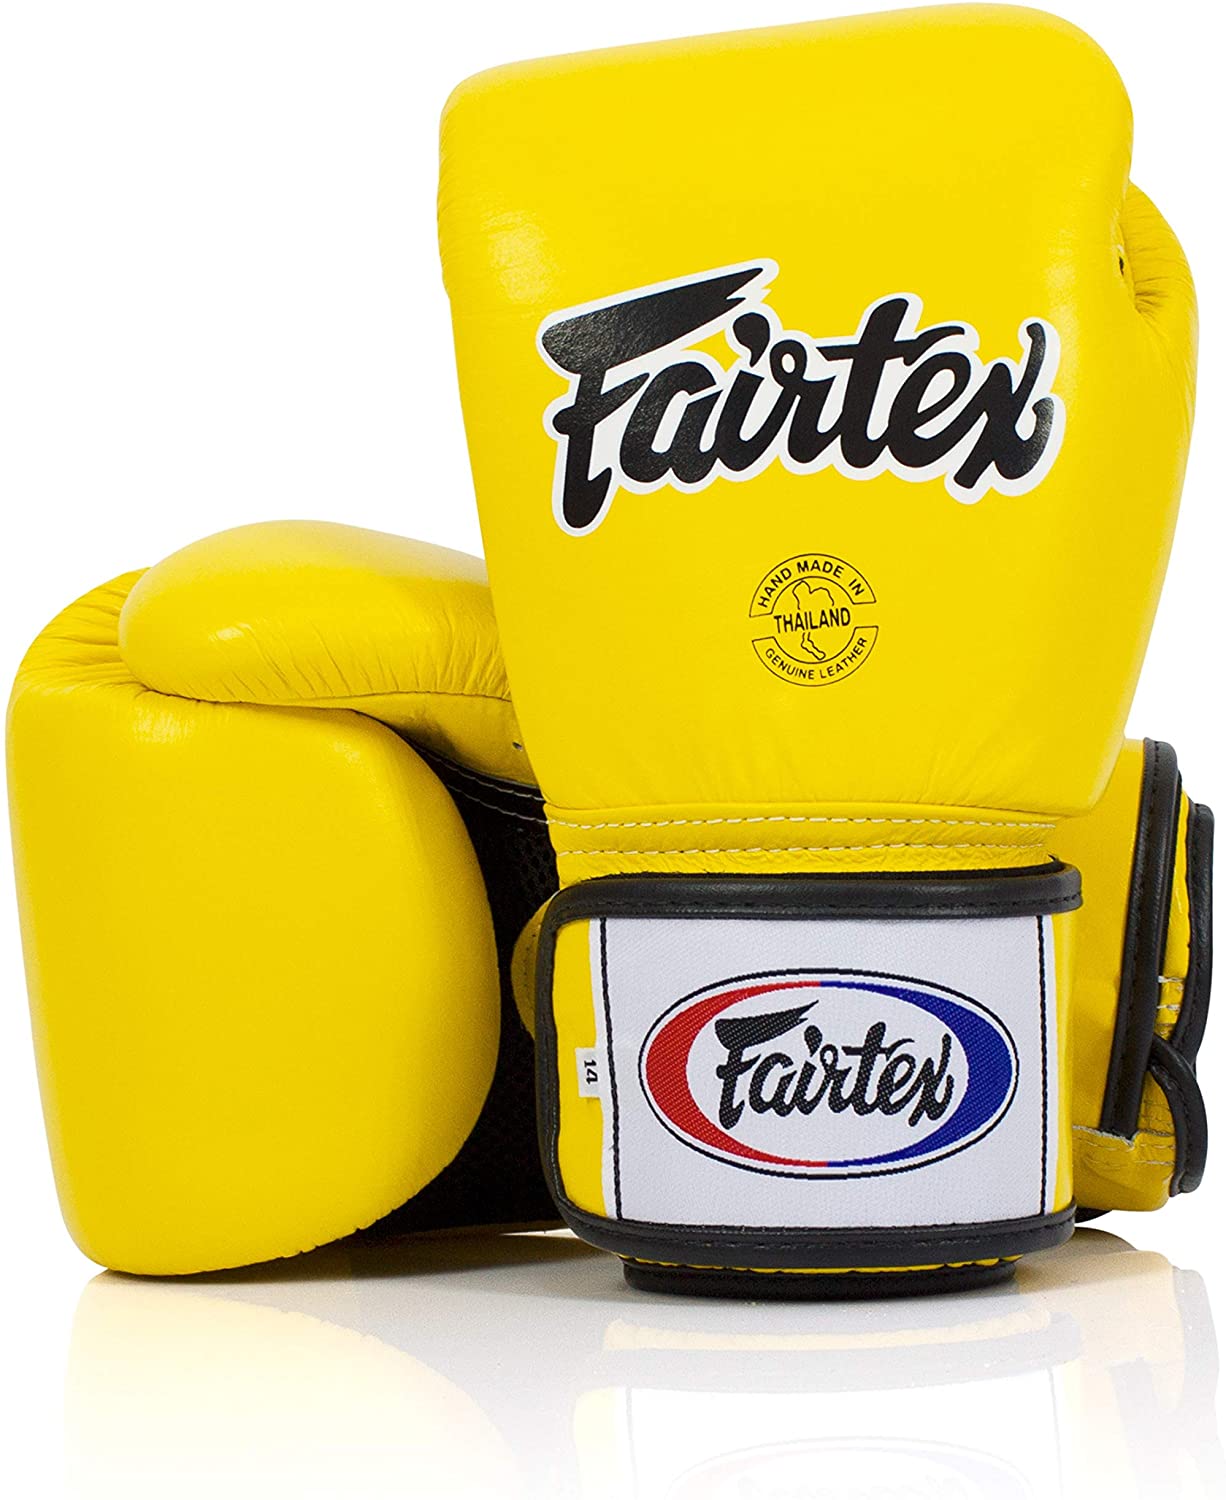 Fairtex for shadow boxing